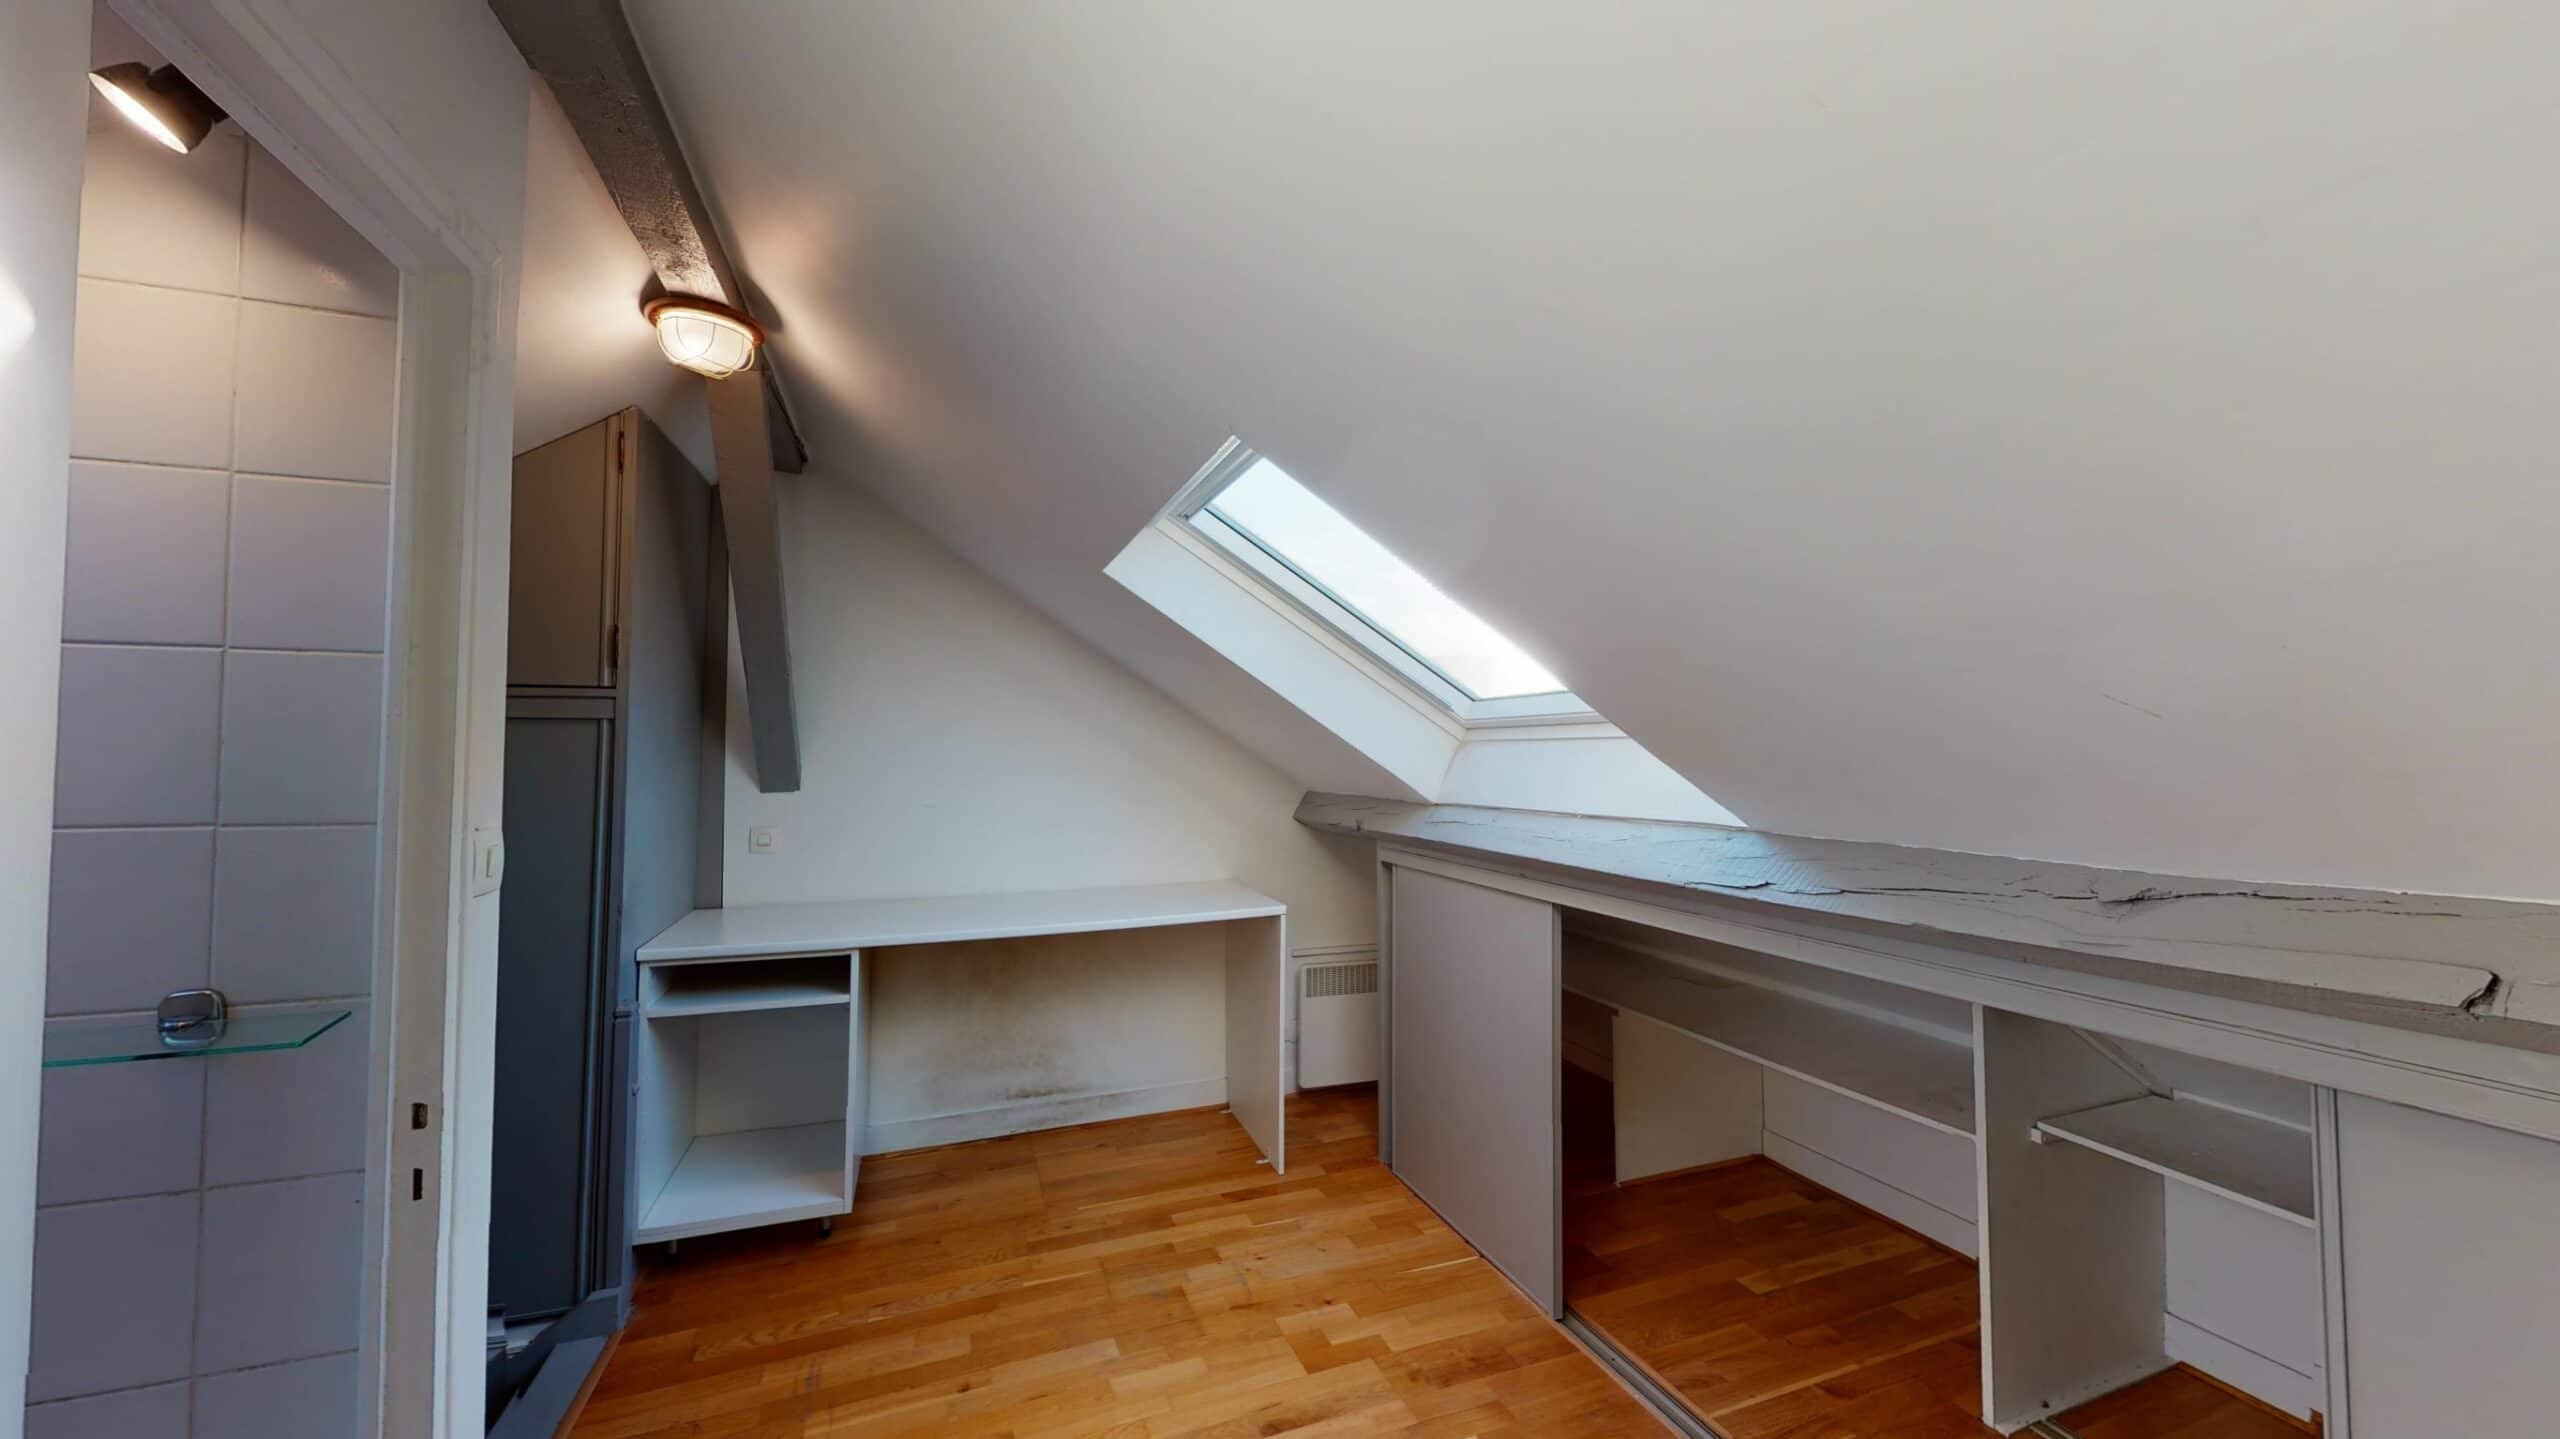 location appartement maison alfort: 3 pièces 50 m² refait à neuf, seconde chambre